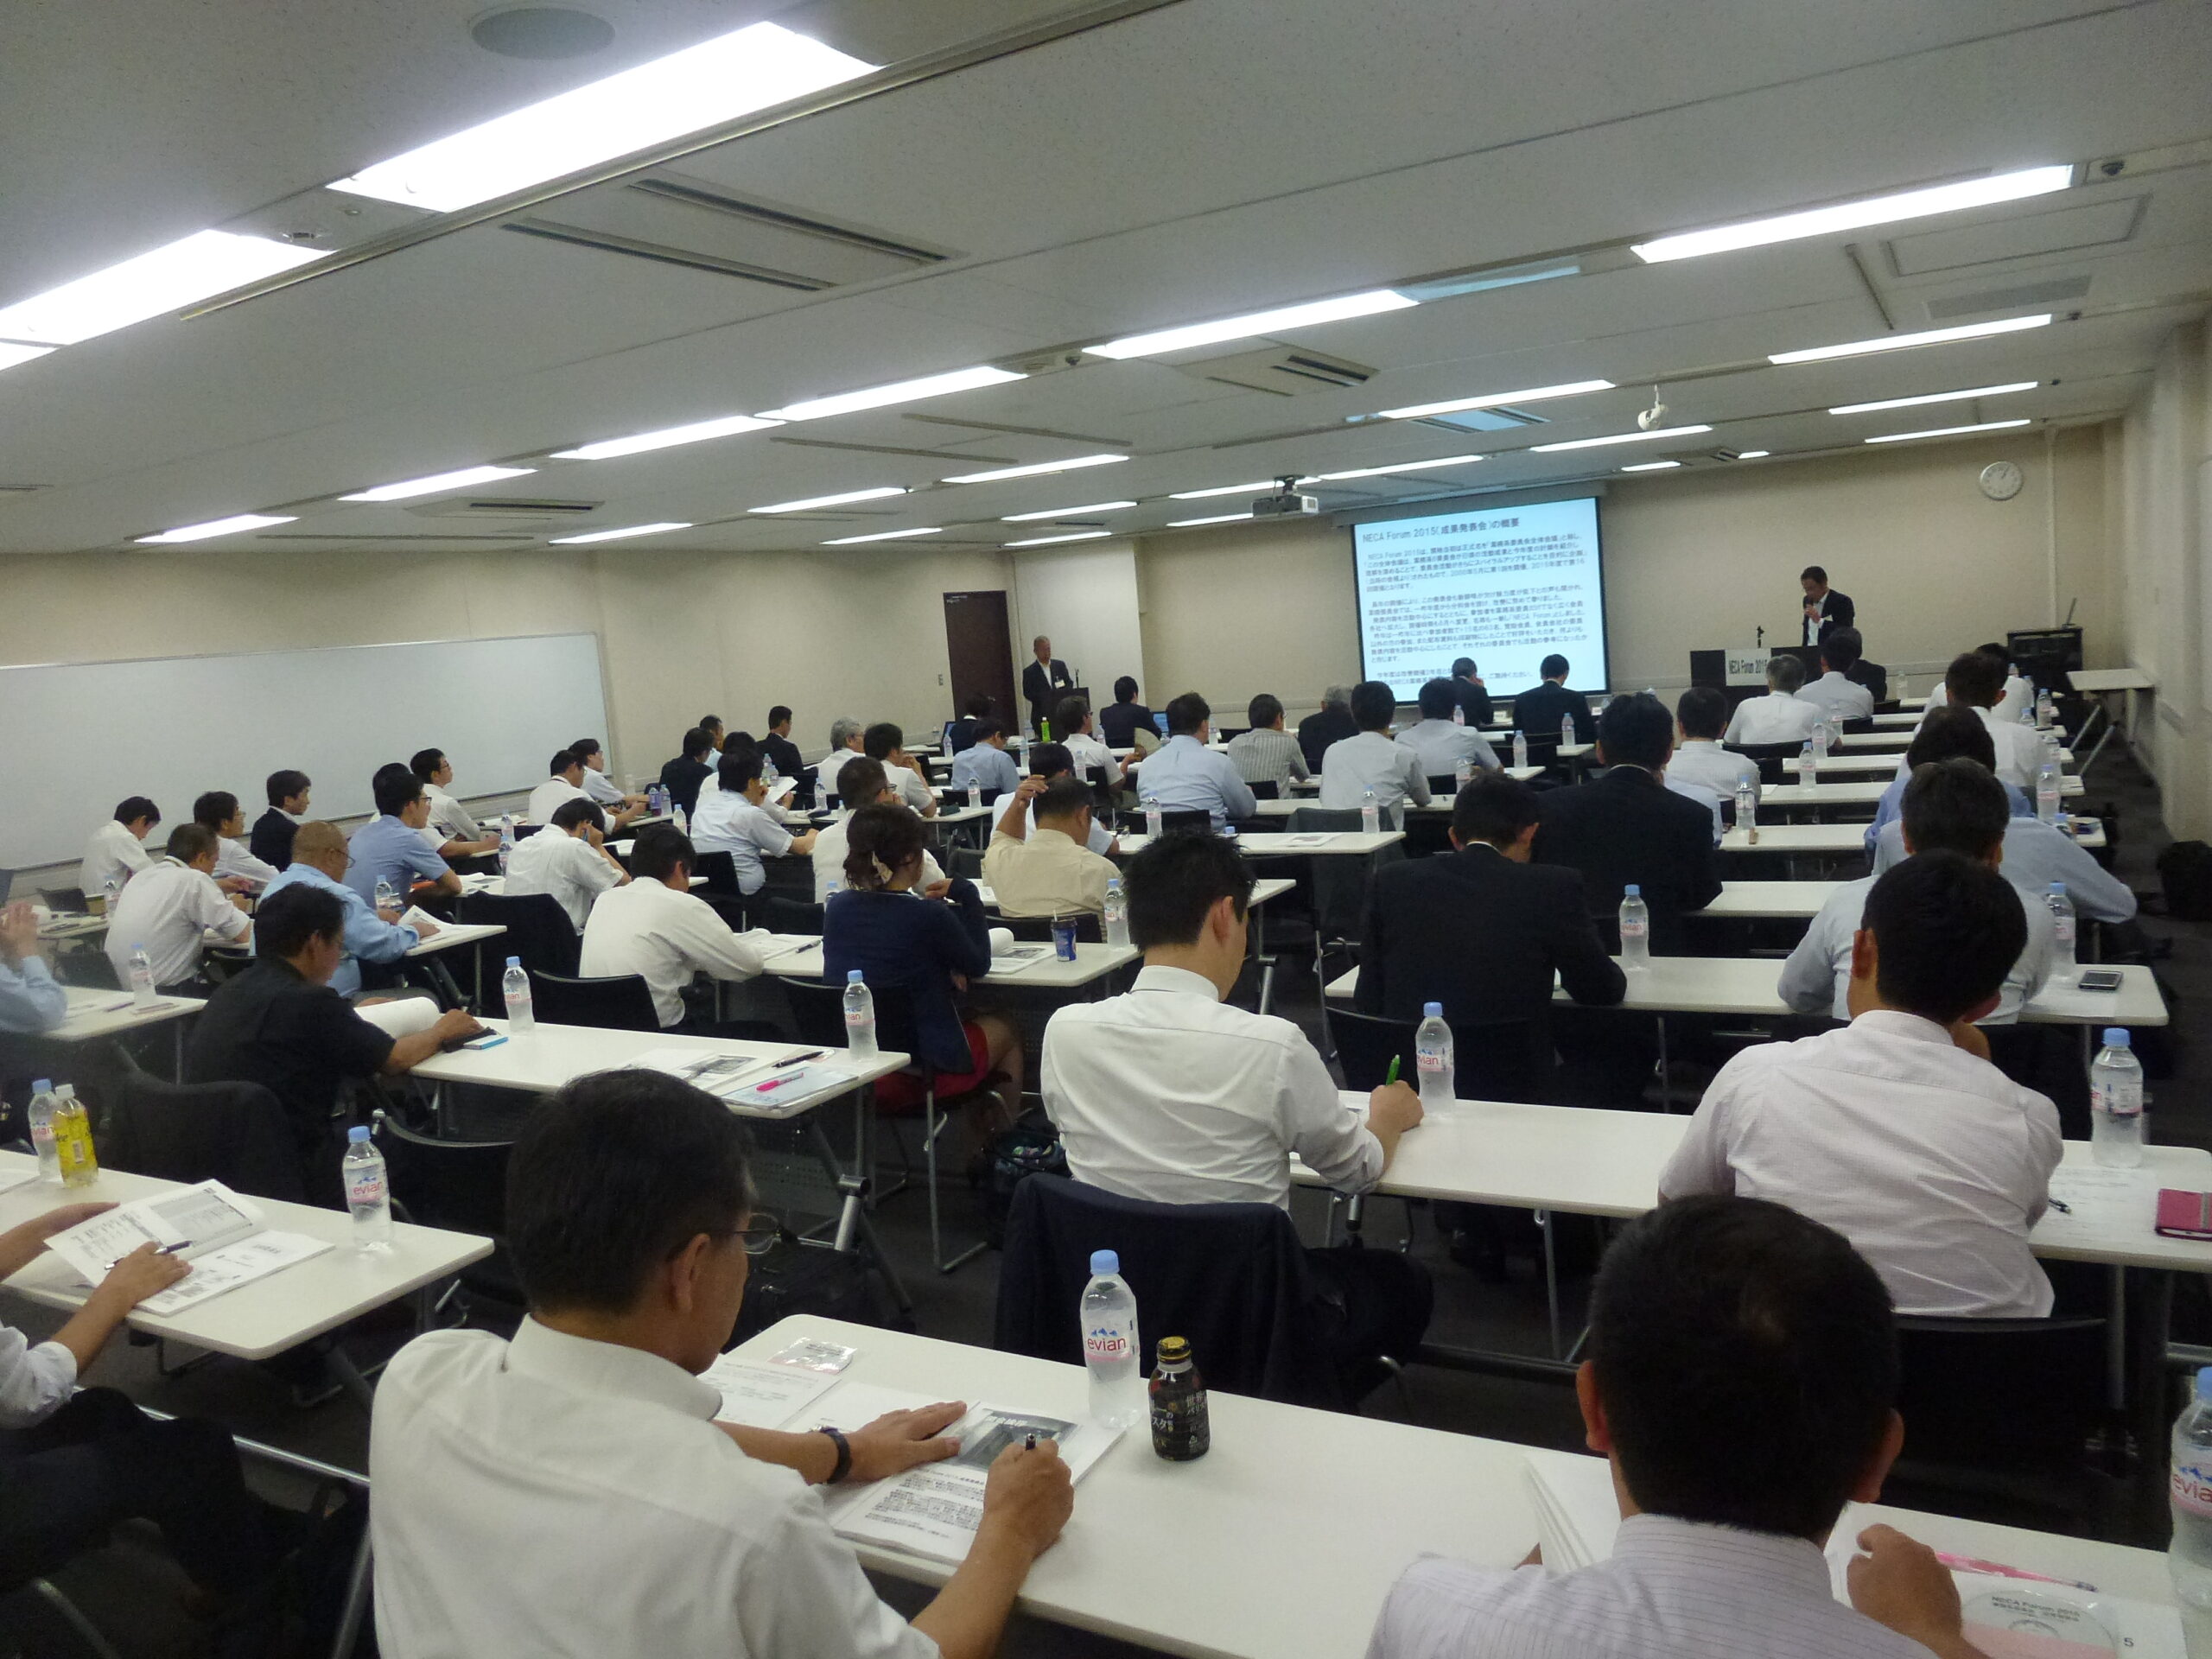 日本電気制御機器工業会 「NECAフォーラム」開催 71人参加